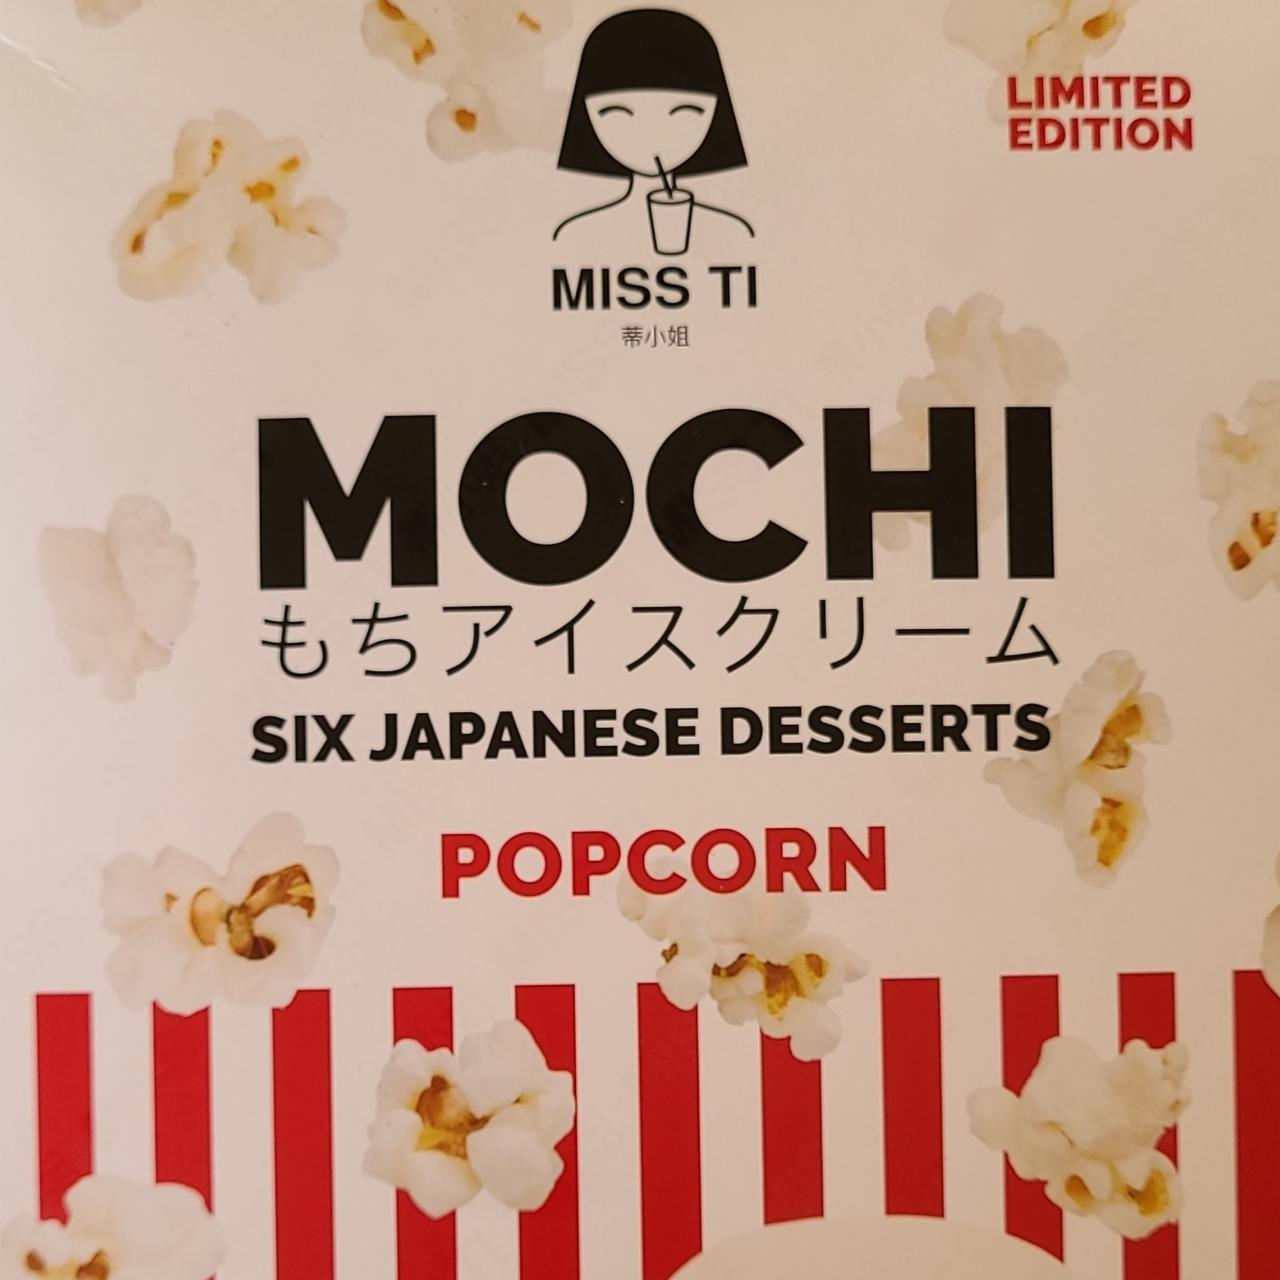 Fotografie - Mochi six japanese desserts popcorn Miss ti